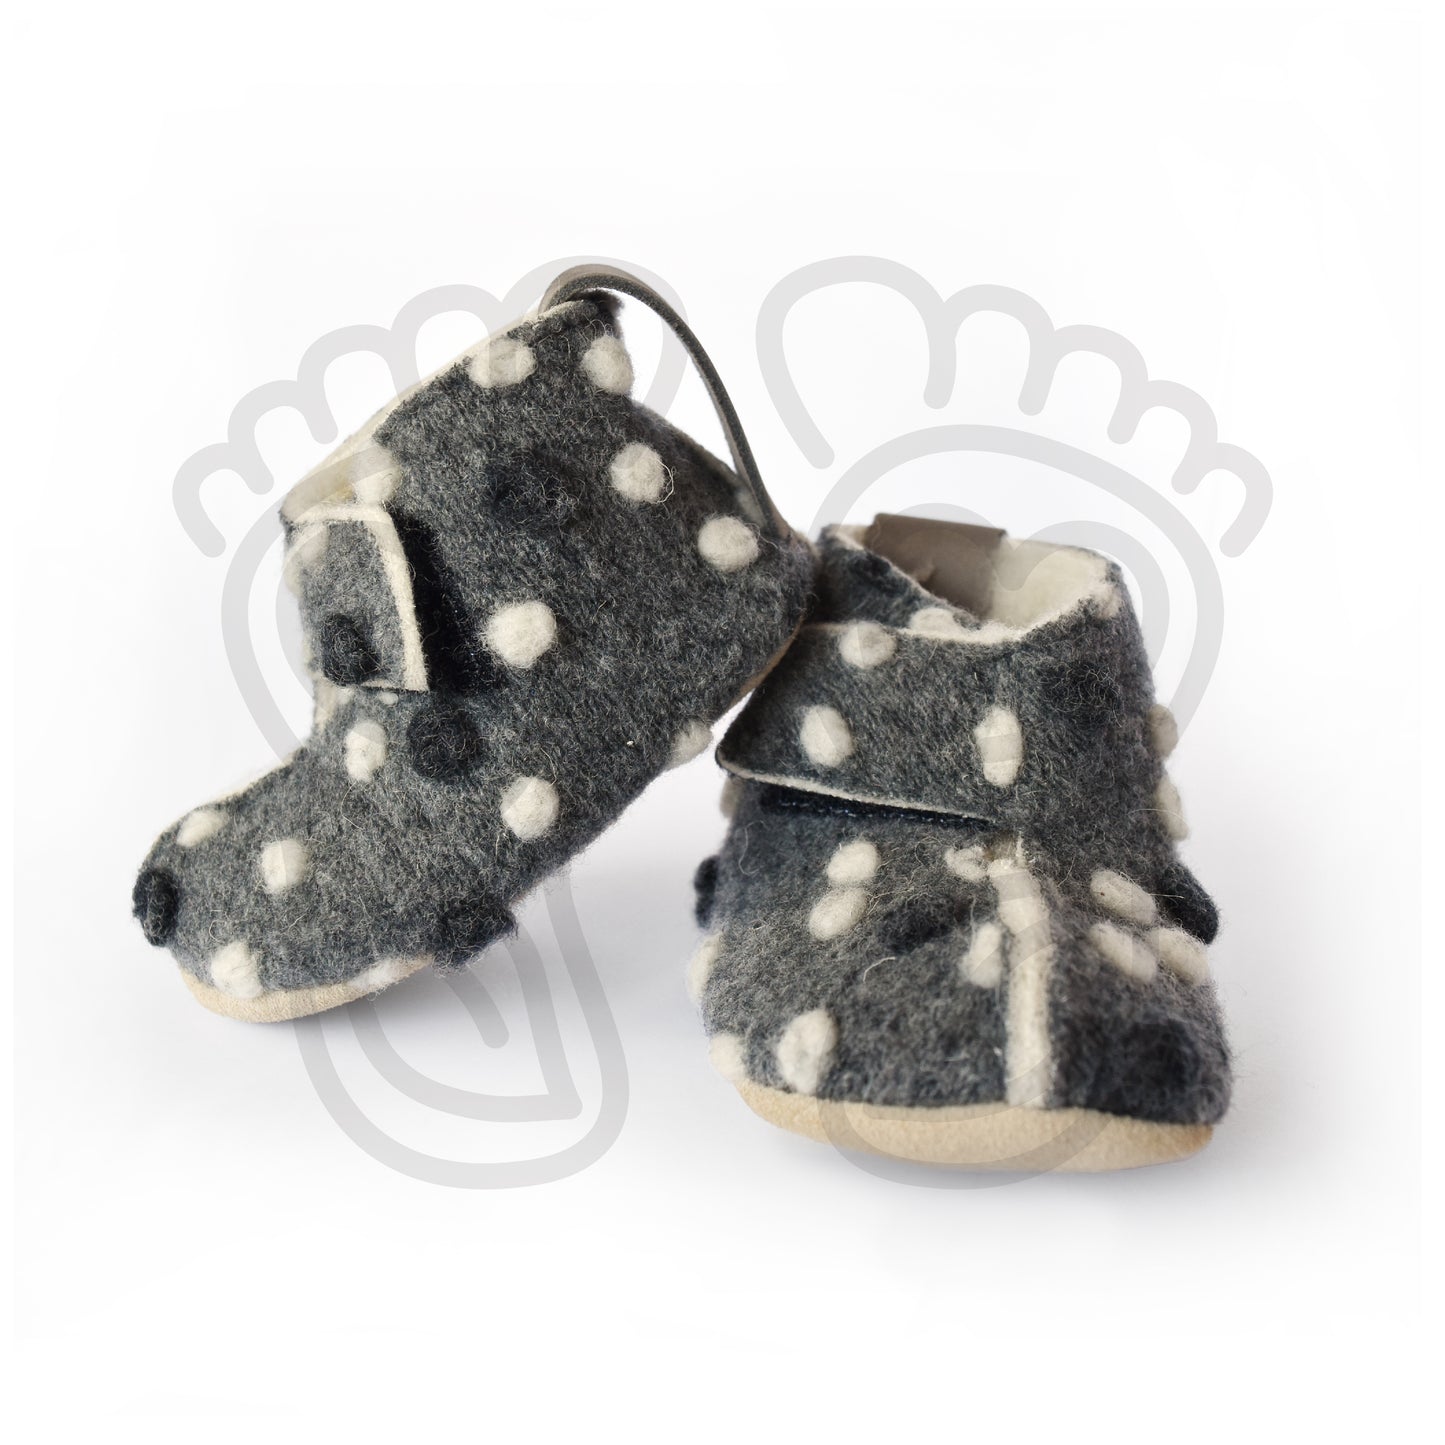 Omaking - Kaku -  zapatillas de casa barefoot de lana - gris oscuro